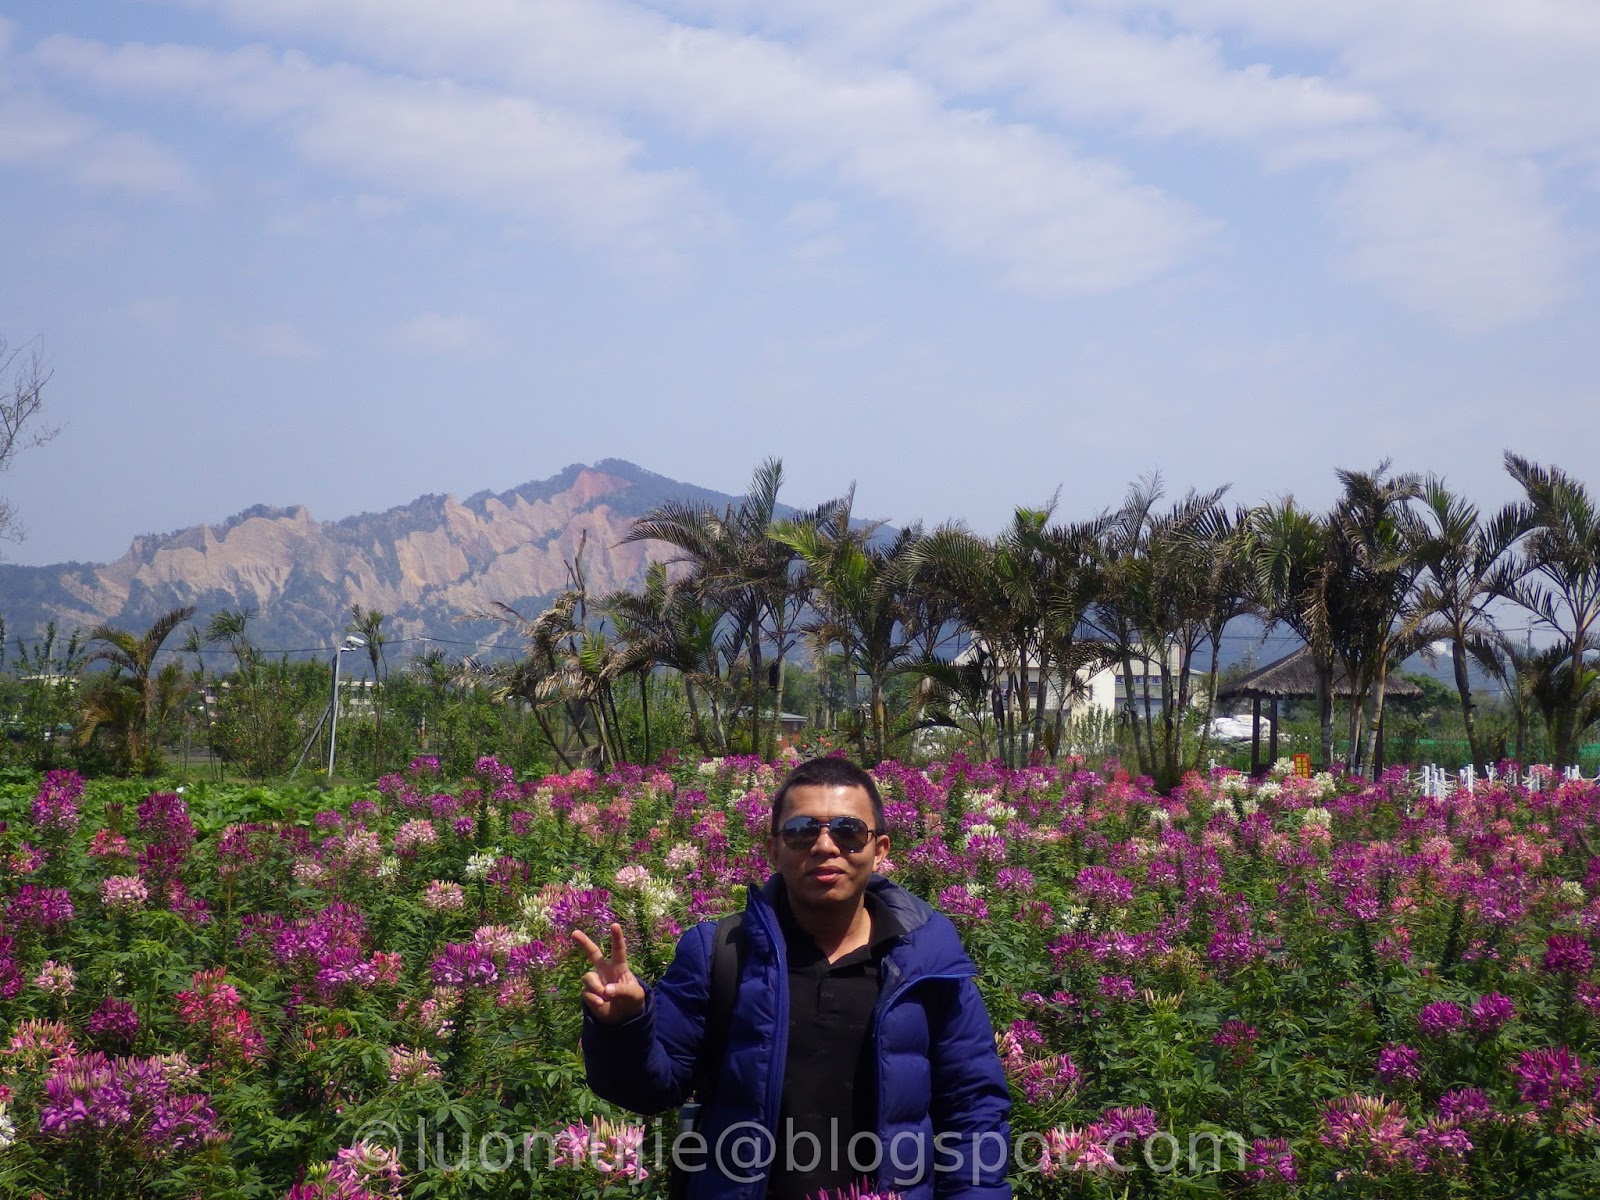 Zhongshe Flower Market - Houli Flower Farm